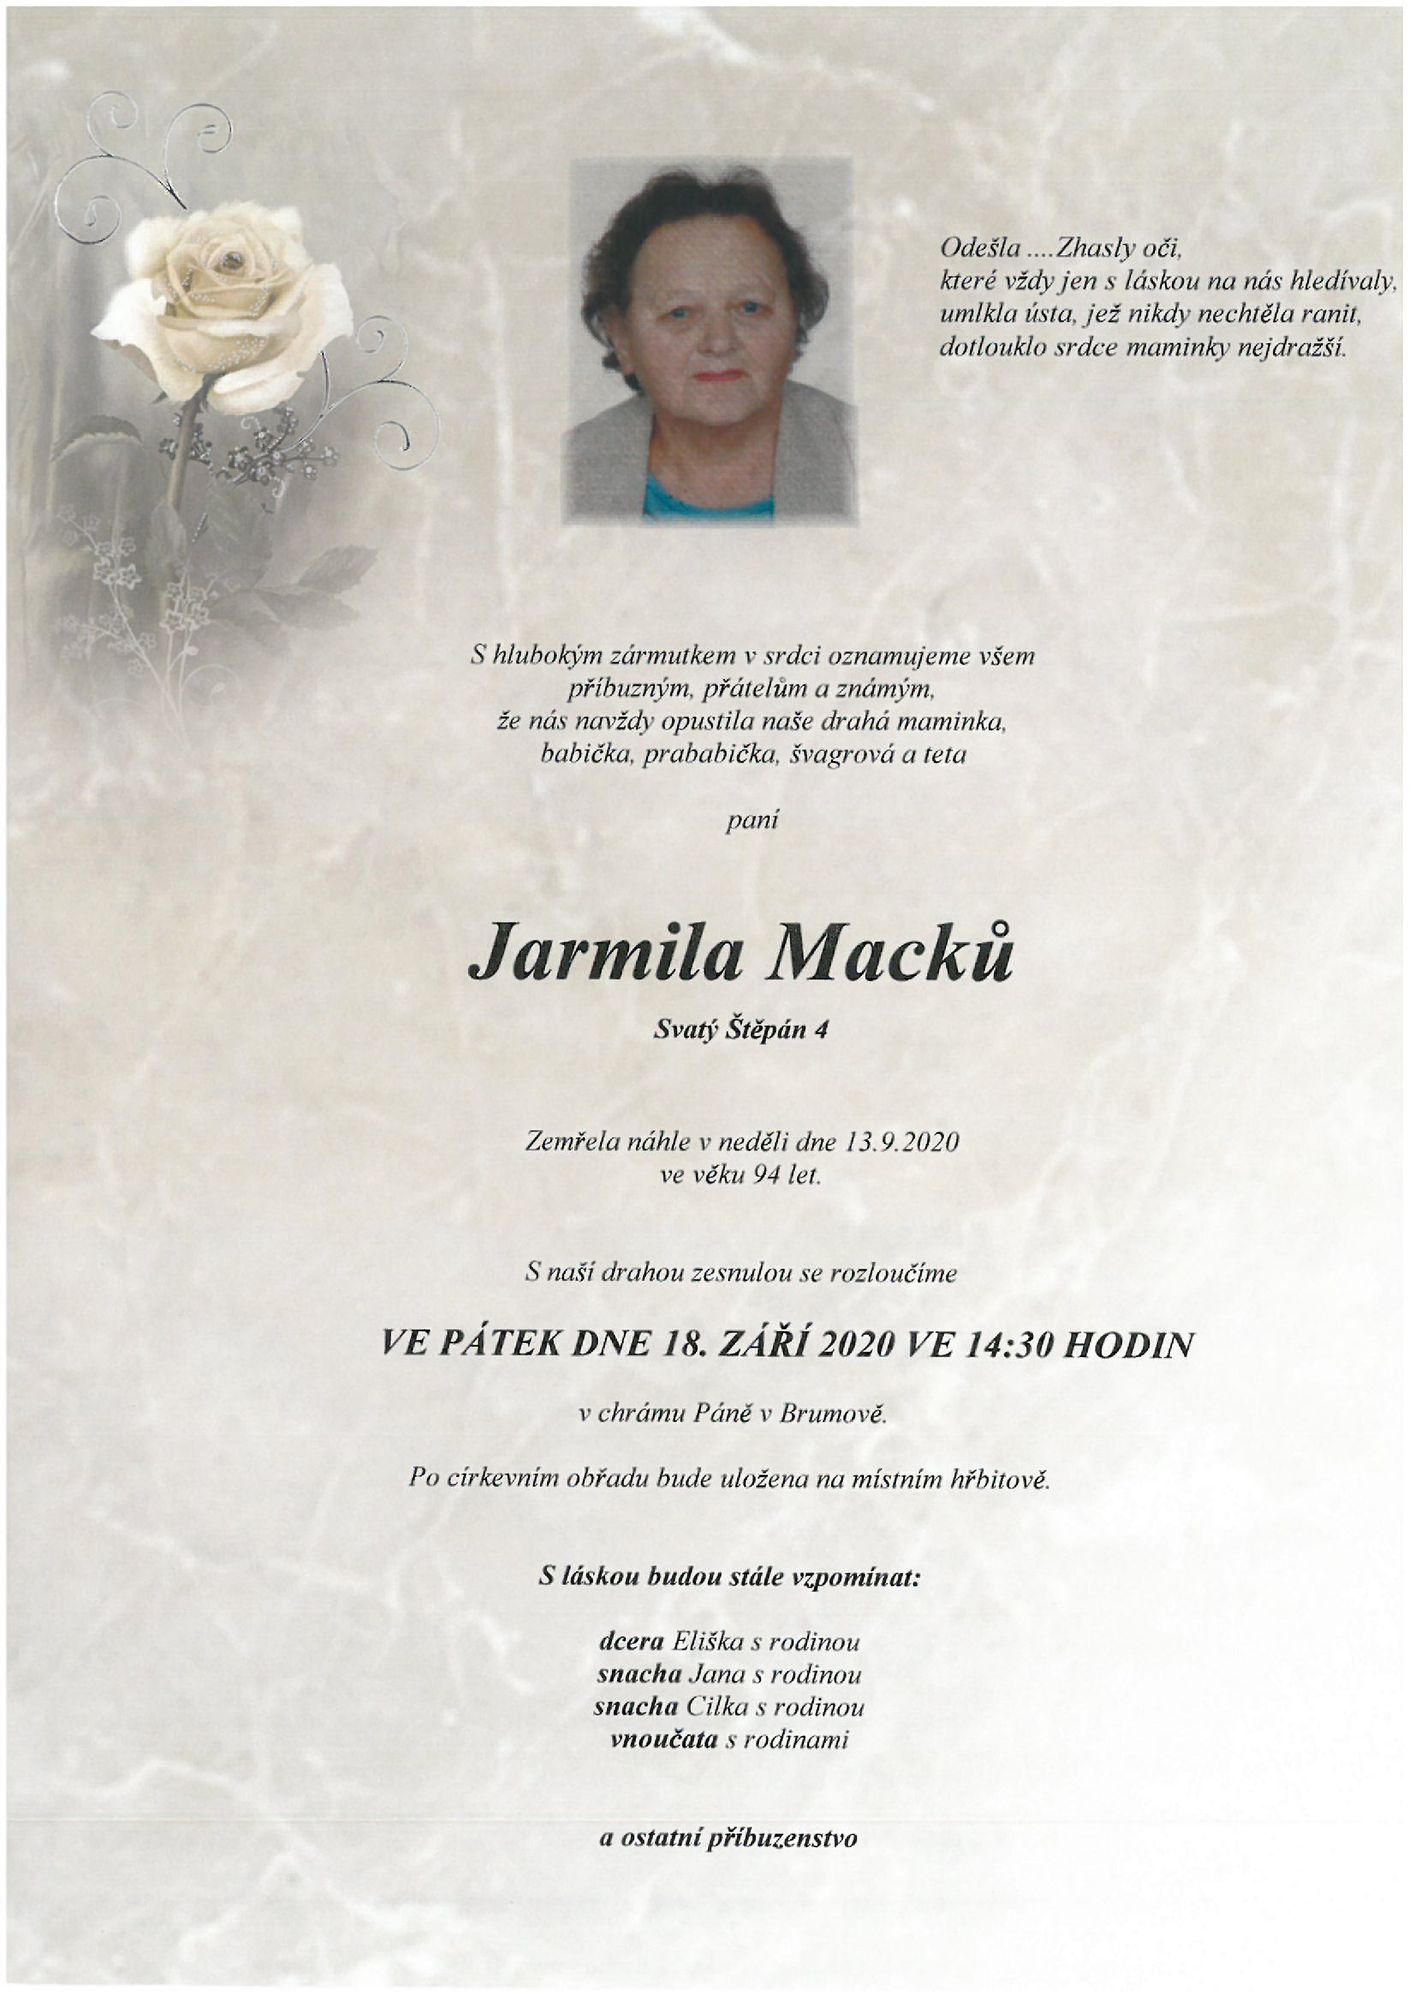 Jarmila Macků